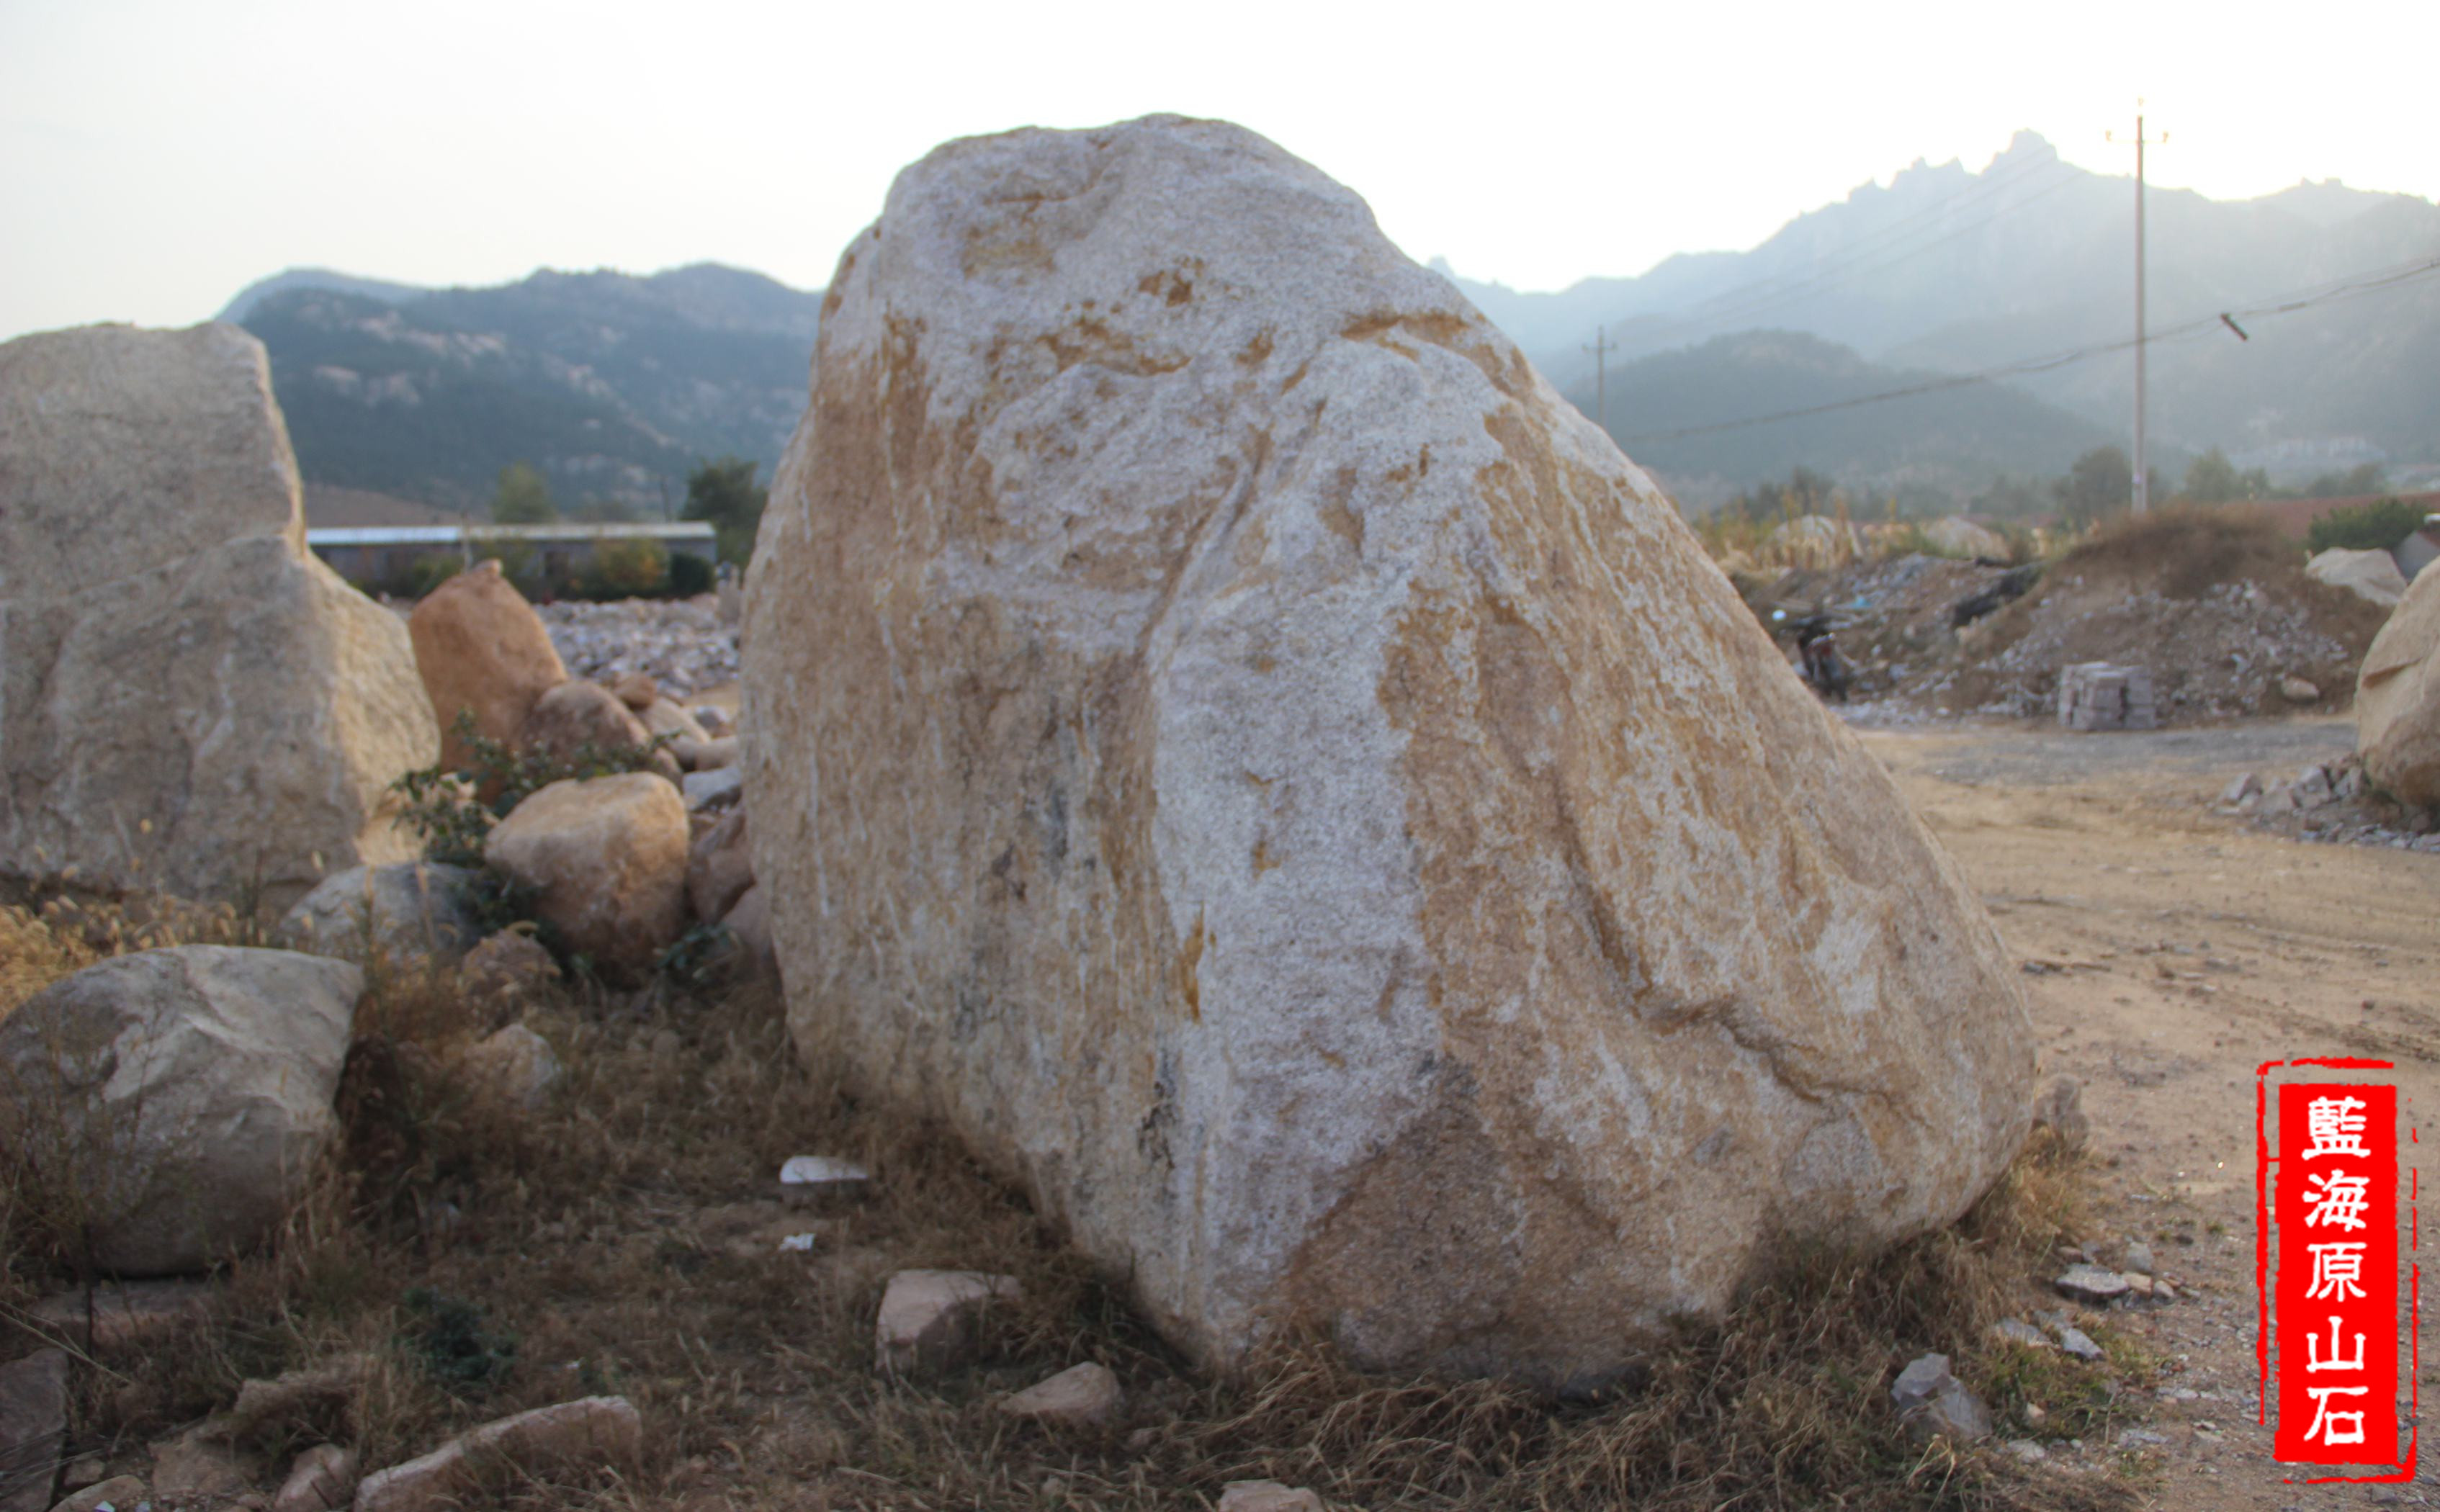 【携程攻略】东山东山风动石景区景点,确实很神奇。挺大一块石头。有意思的是，旁边立碑特意警告：不准推石…